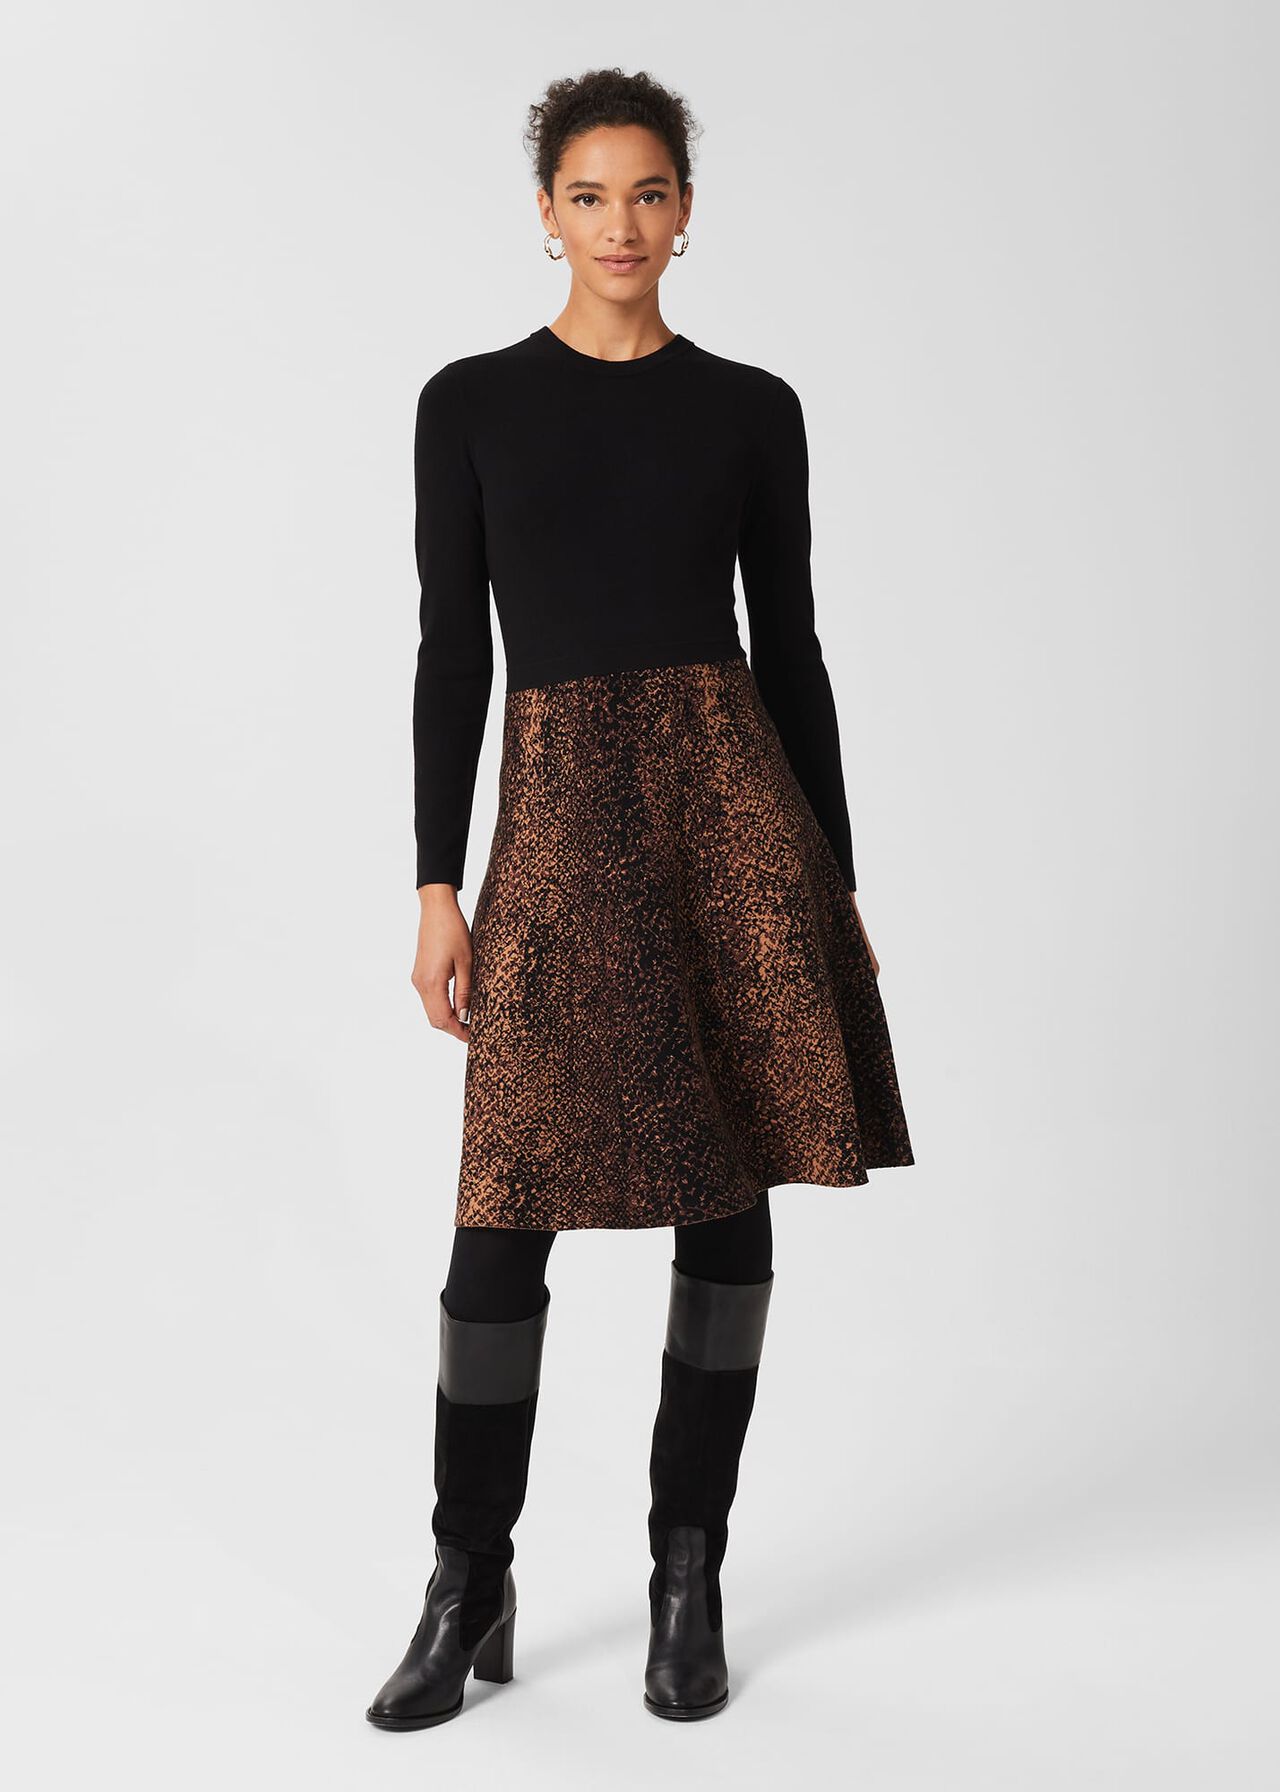 Hallie Knitted Dress, Black Brown, hi-res